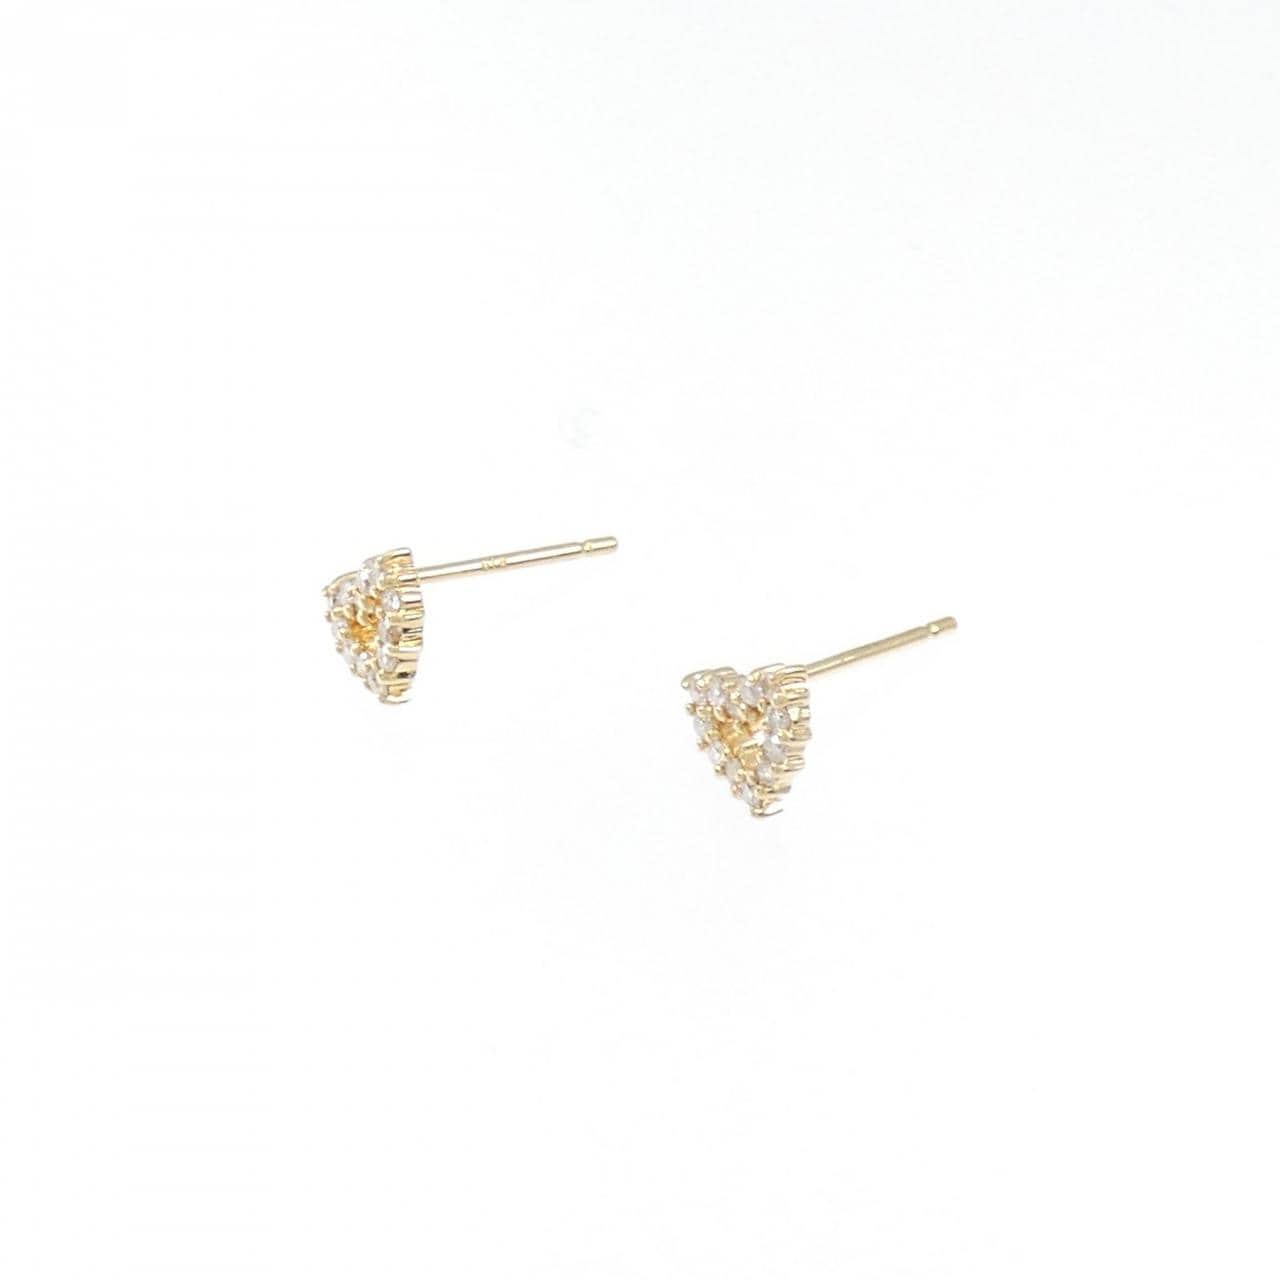 K18YG heart Diamond earrings 0.12CT